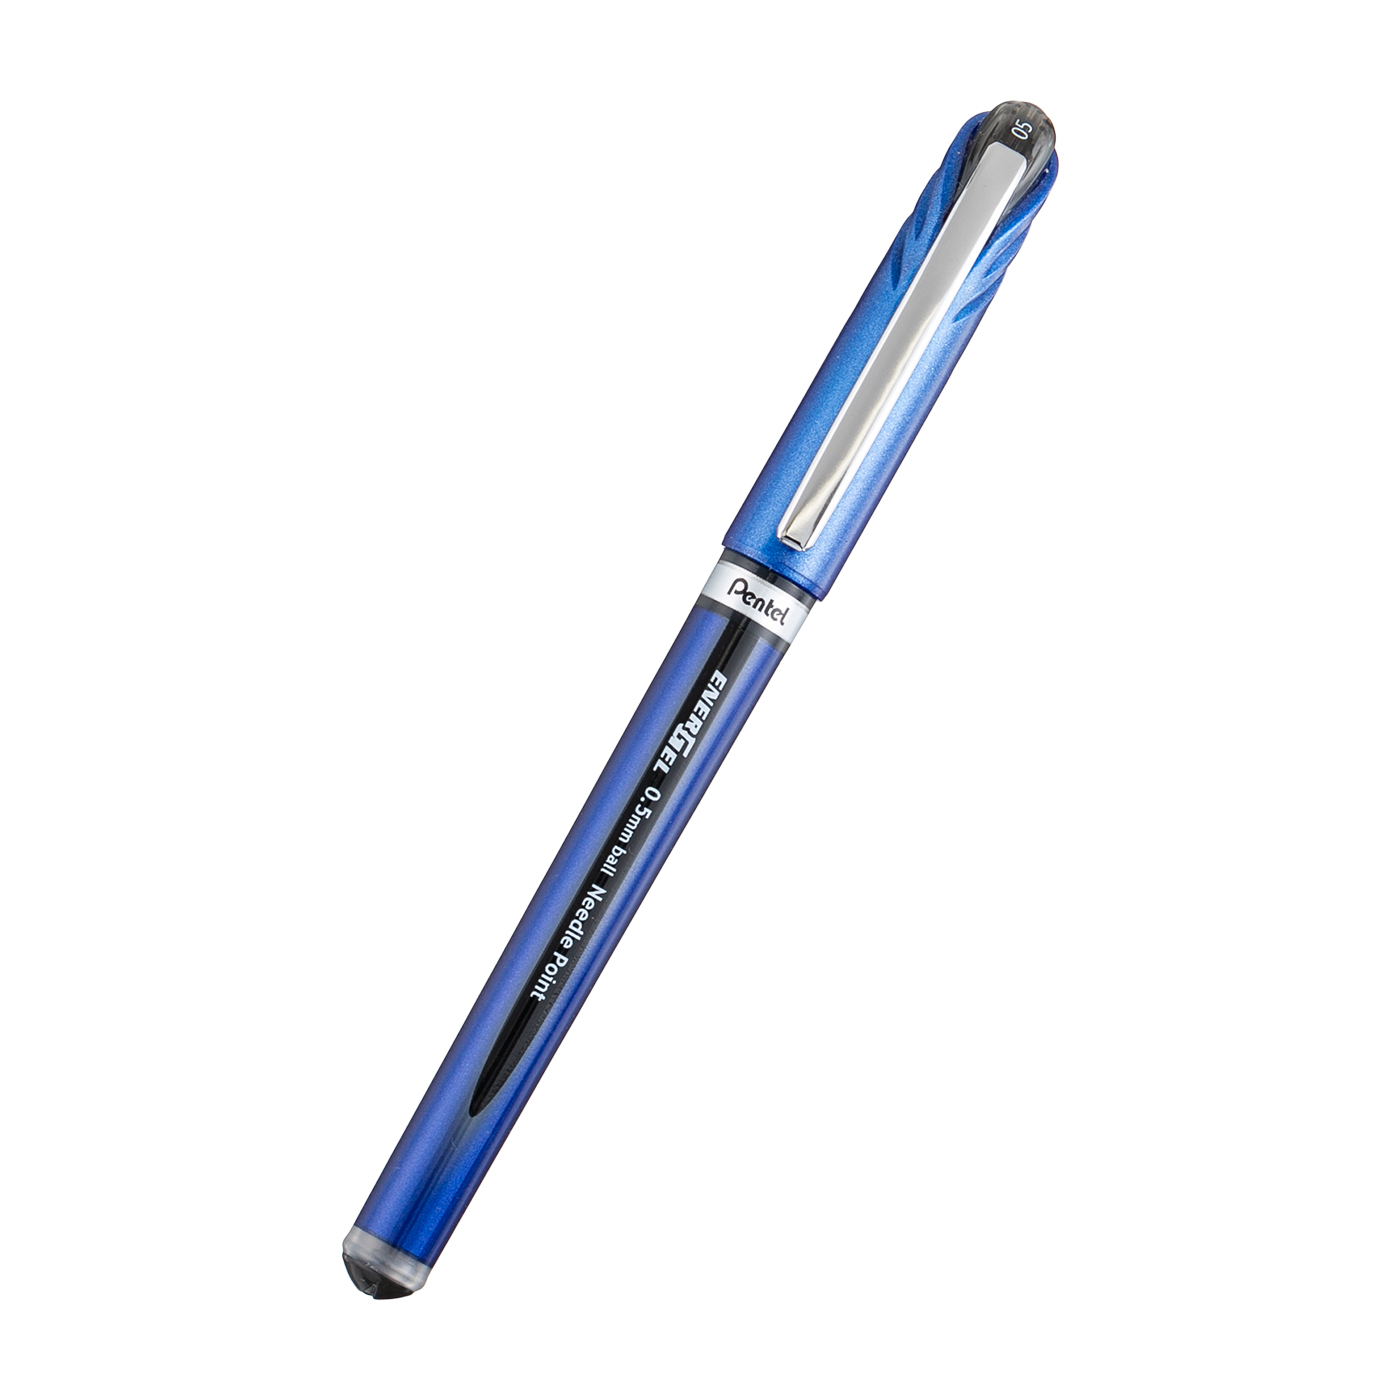 ぺんてる エナージェルユーロ 1.0mm 黒 BL30-A  黒インク 水性ゲルインクボールペン キャップ式